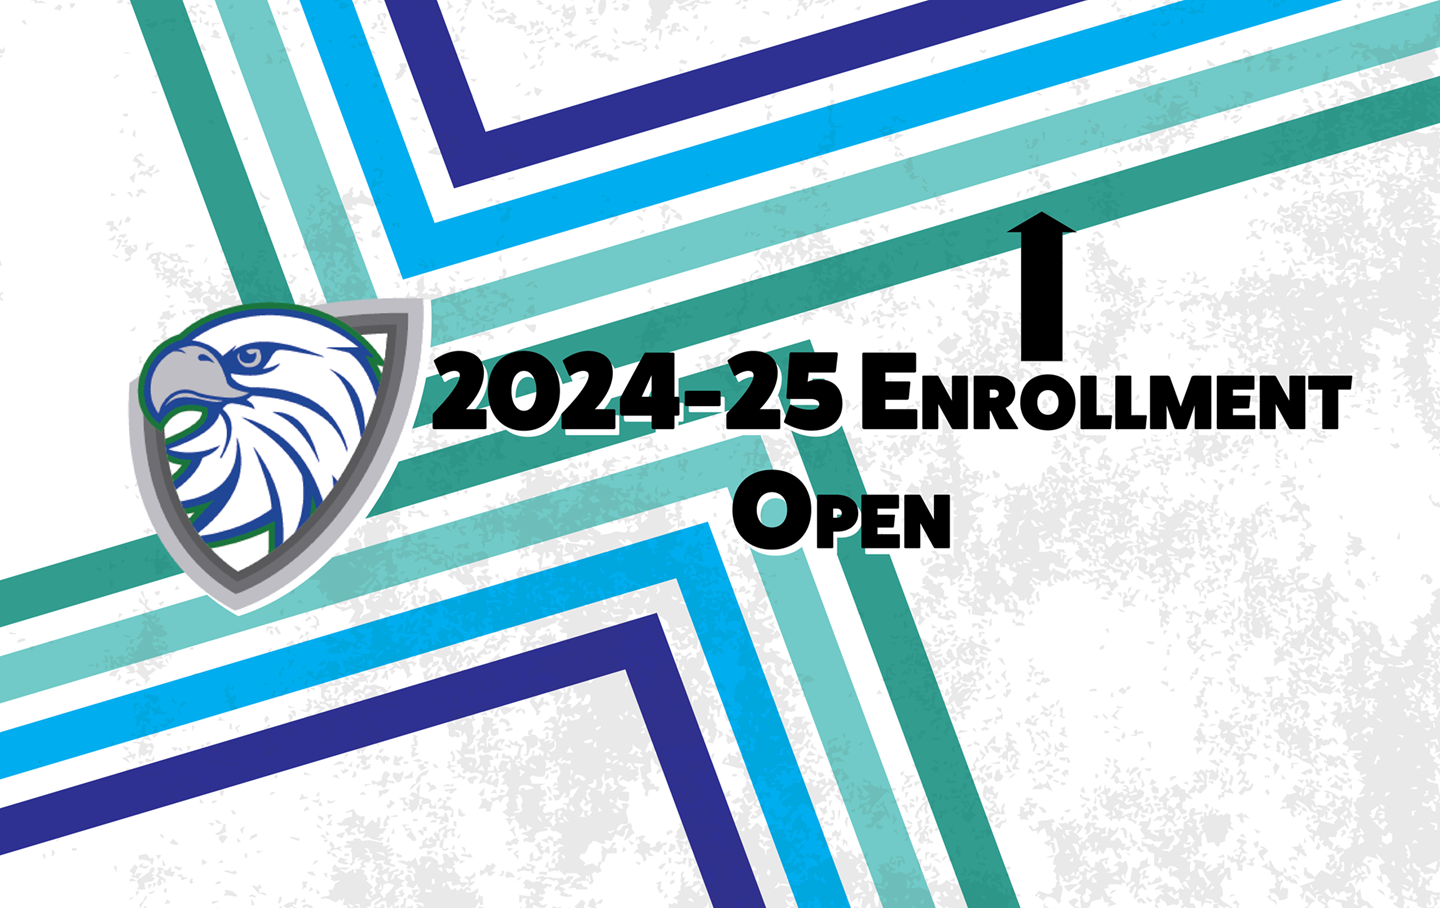 Enrollment is Open!